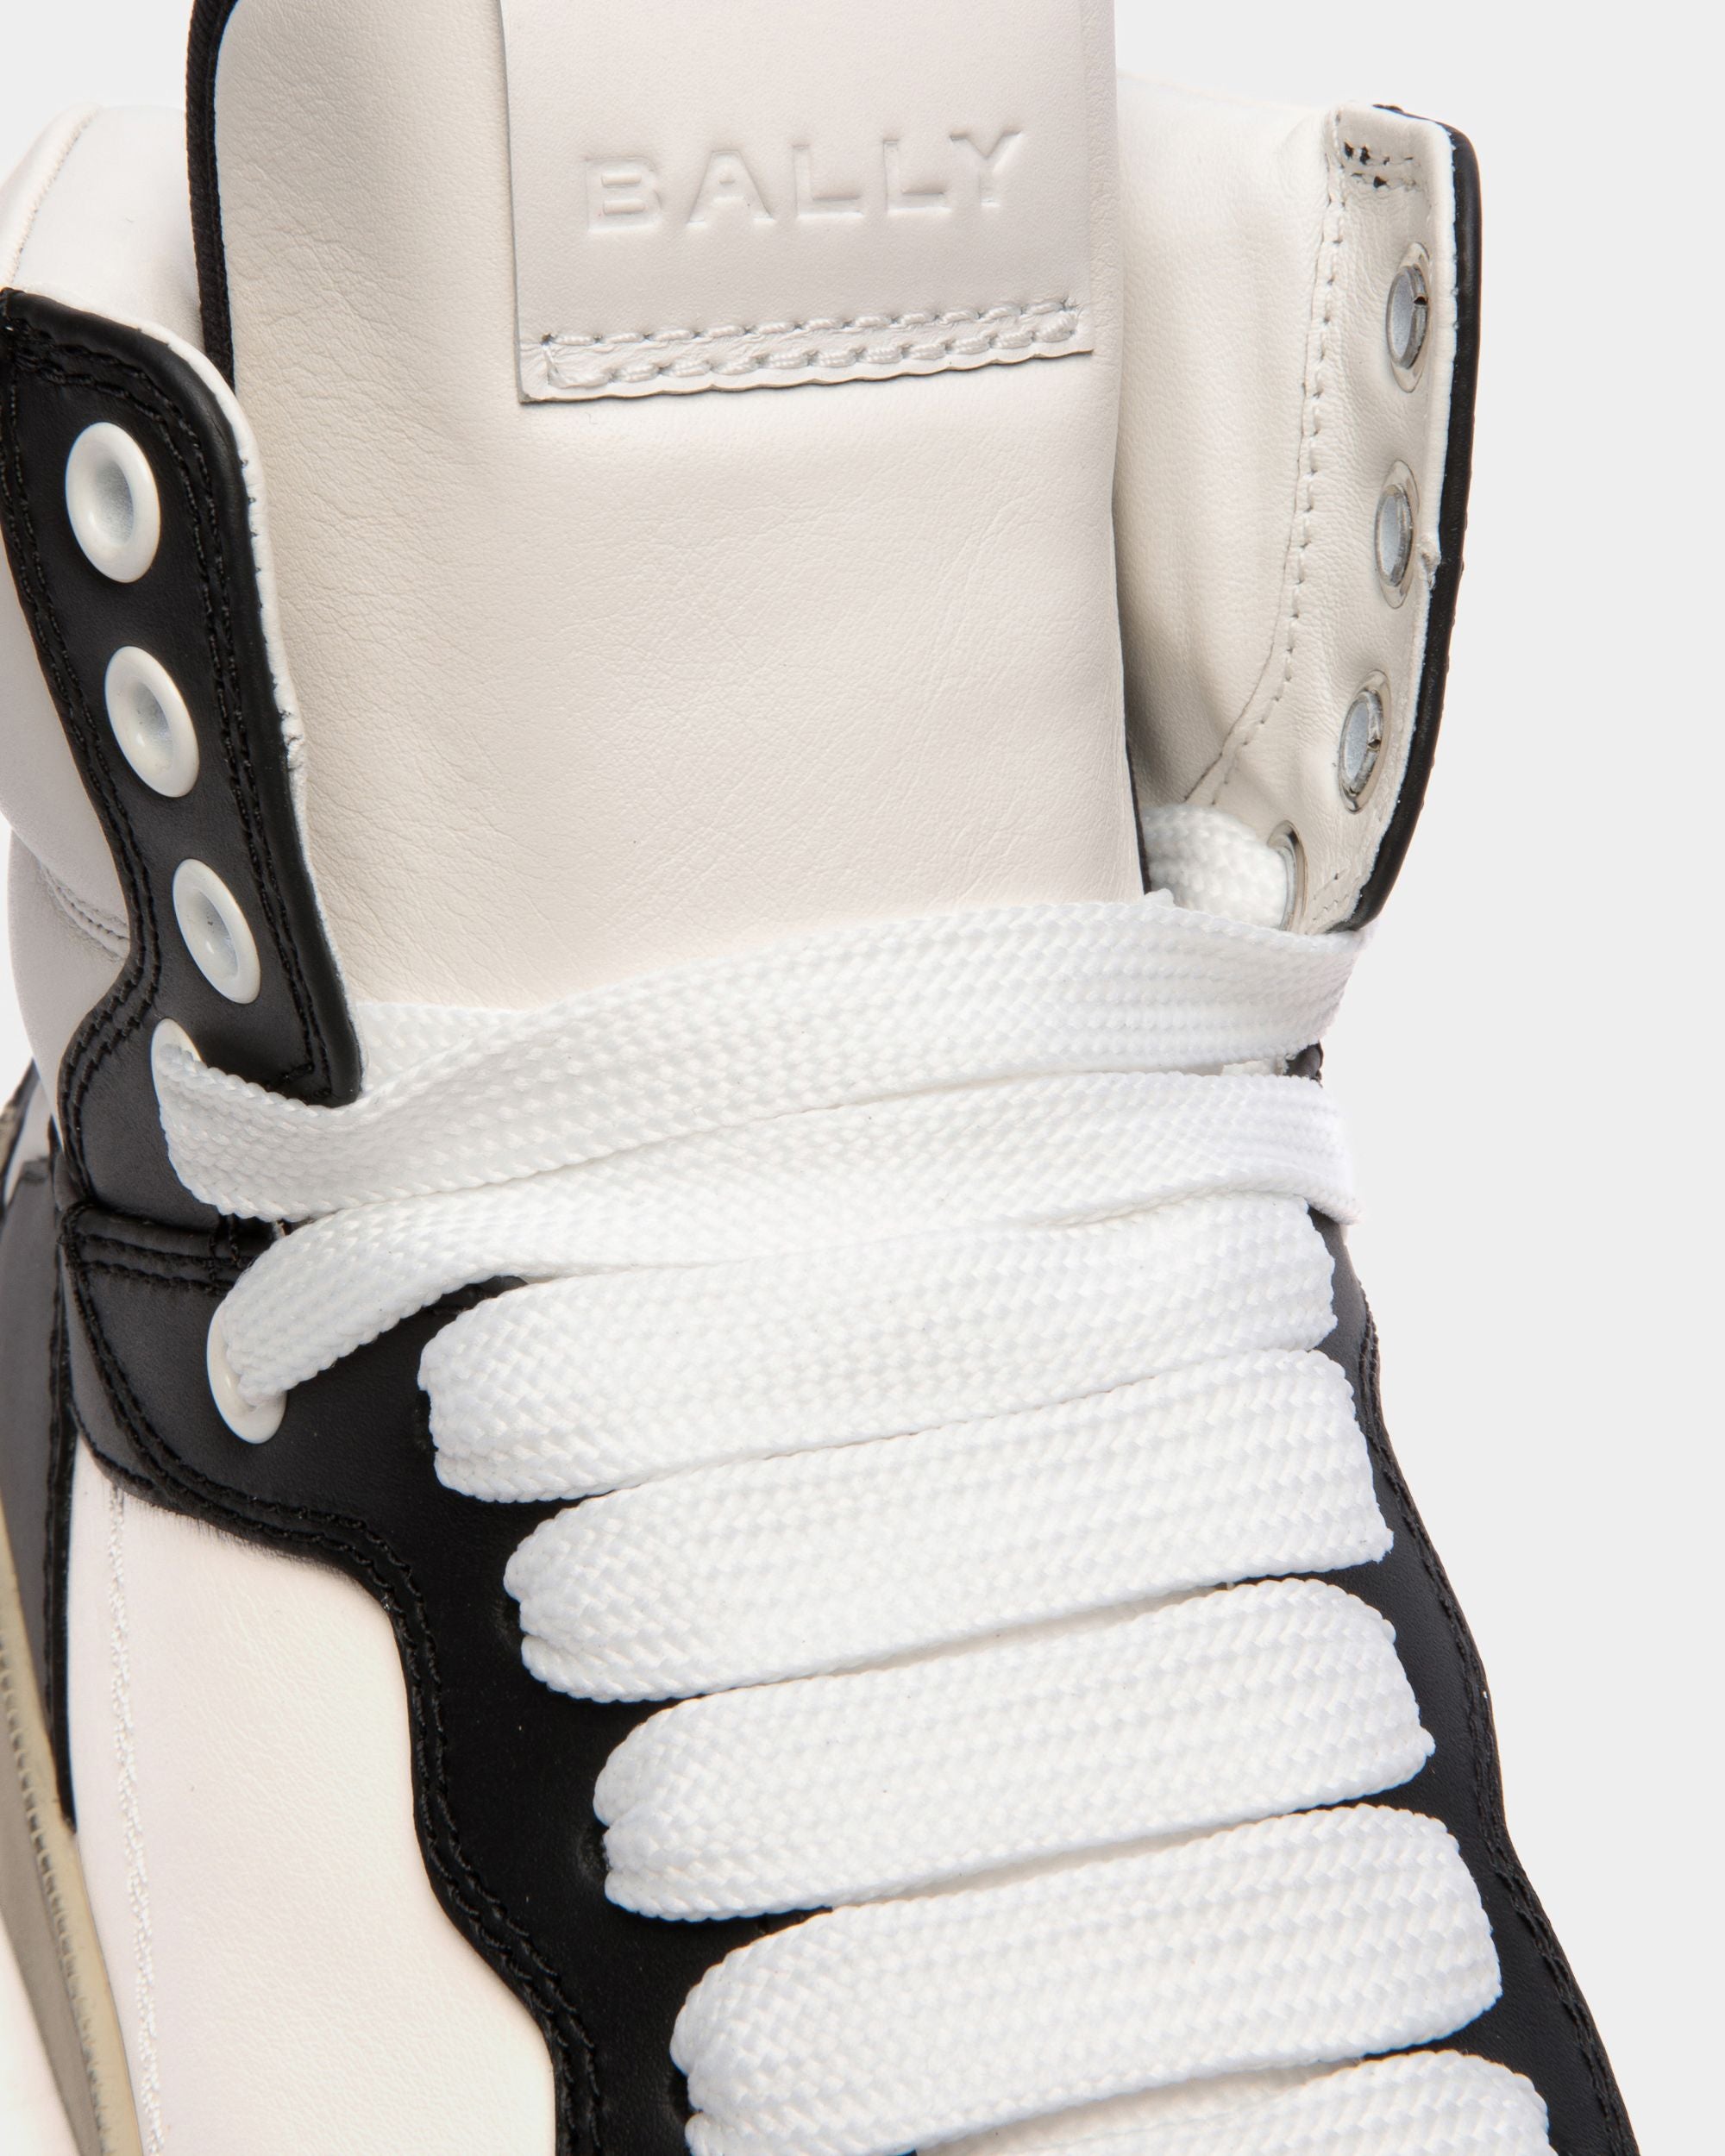 Raise | High-Top-Sneaker für Herren aus schwarzem und weißem Leder | Bally | Still Life Detail